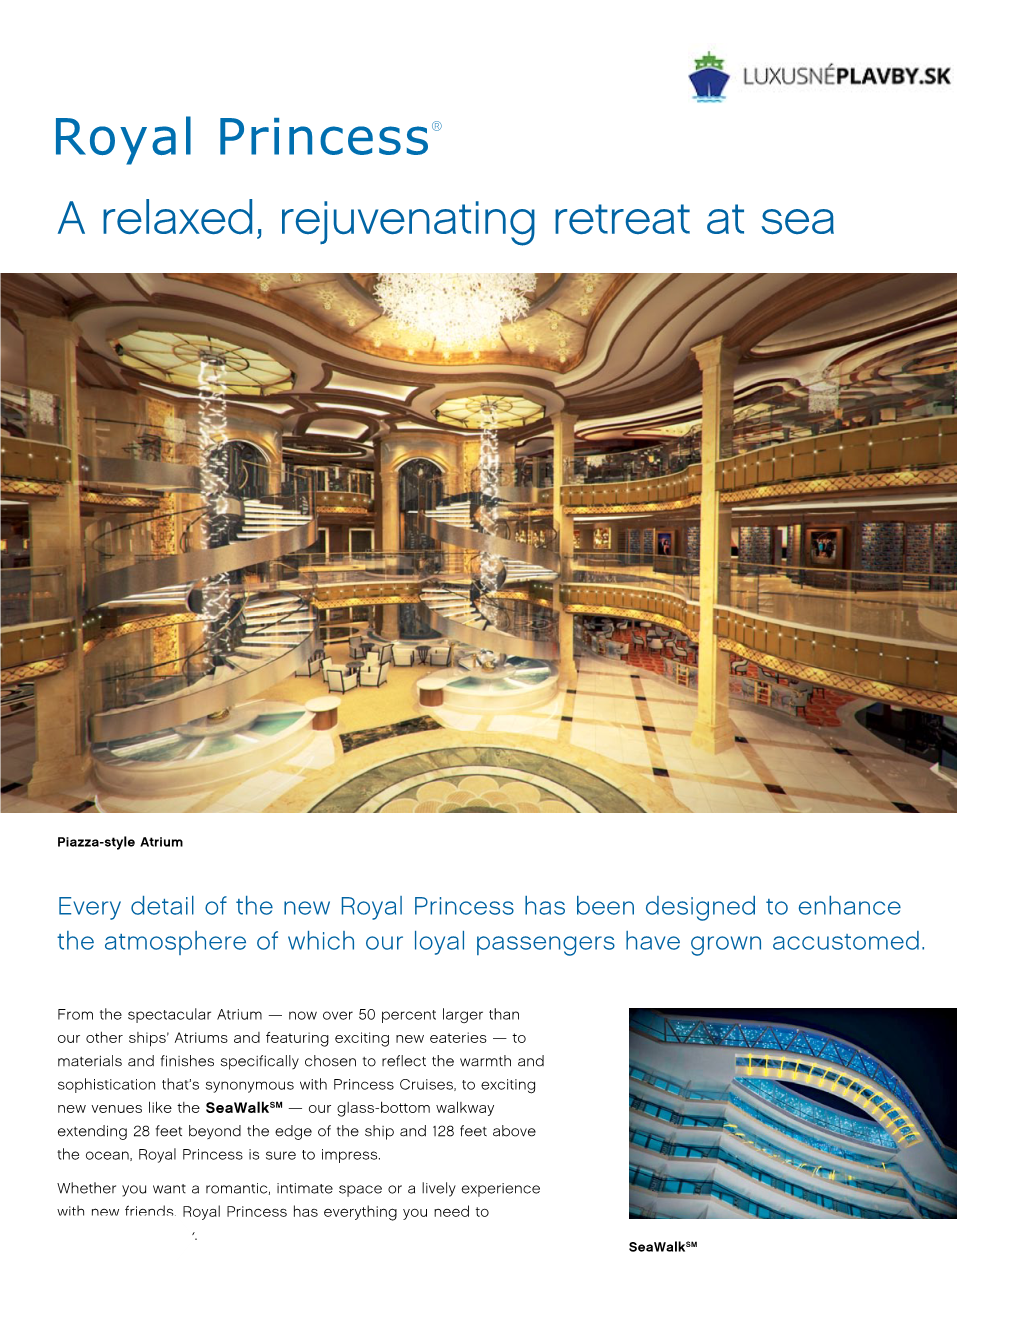 Royal Princess® a Relaxed, Rejuvenating Retreat at Sea